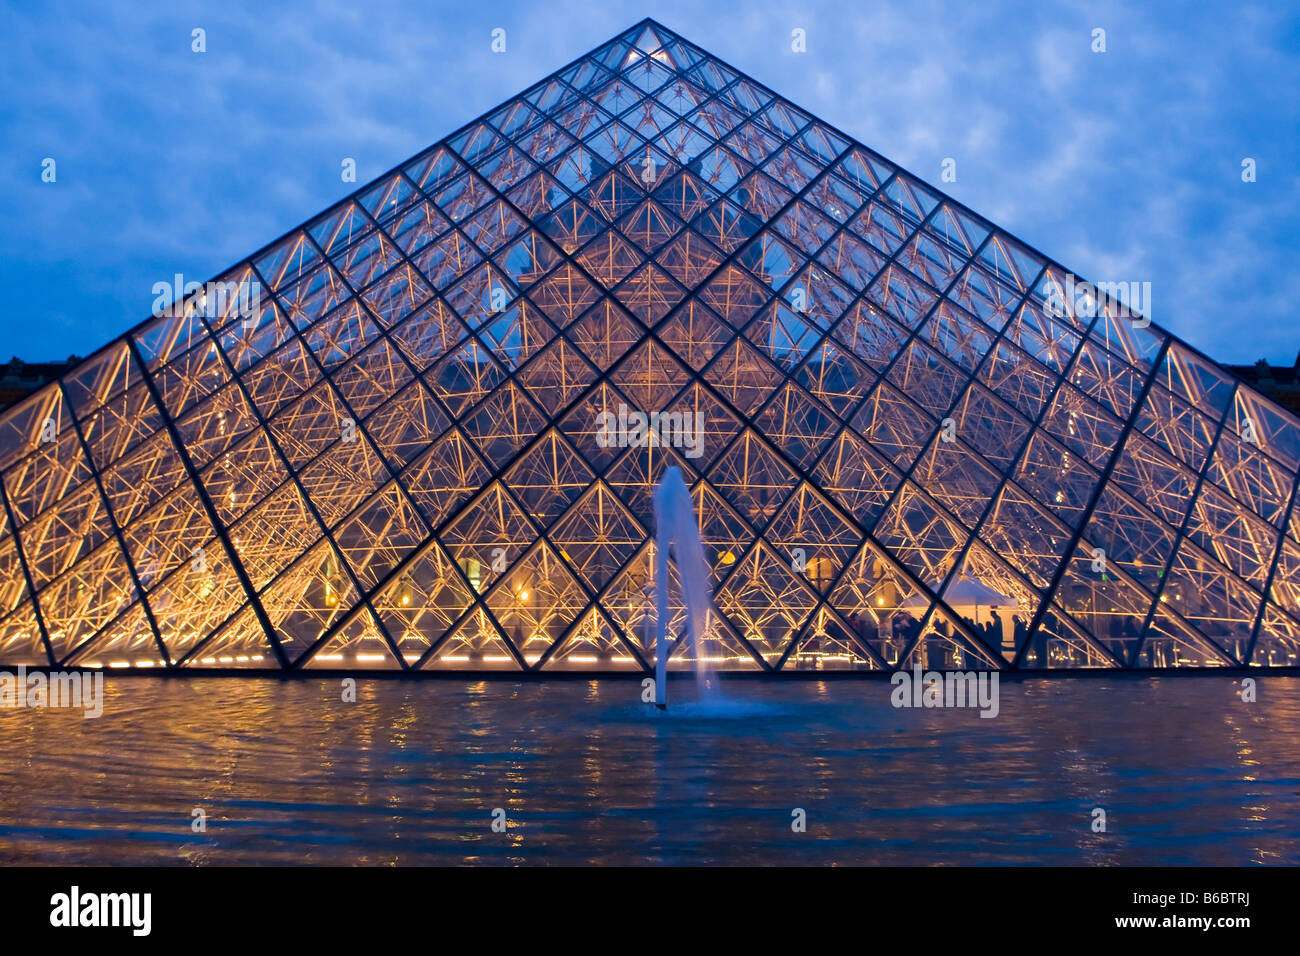 L'Ala Richelieu del Louvre attraverso la sua piramide in vetro ingresso, Parigi Foto Stock